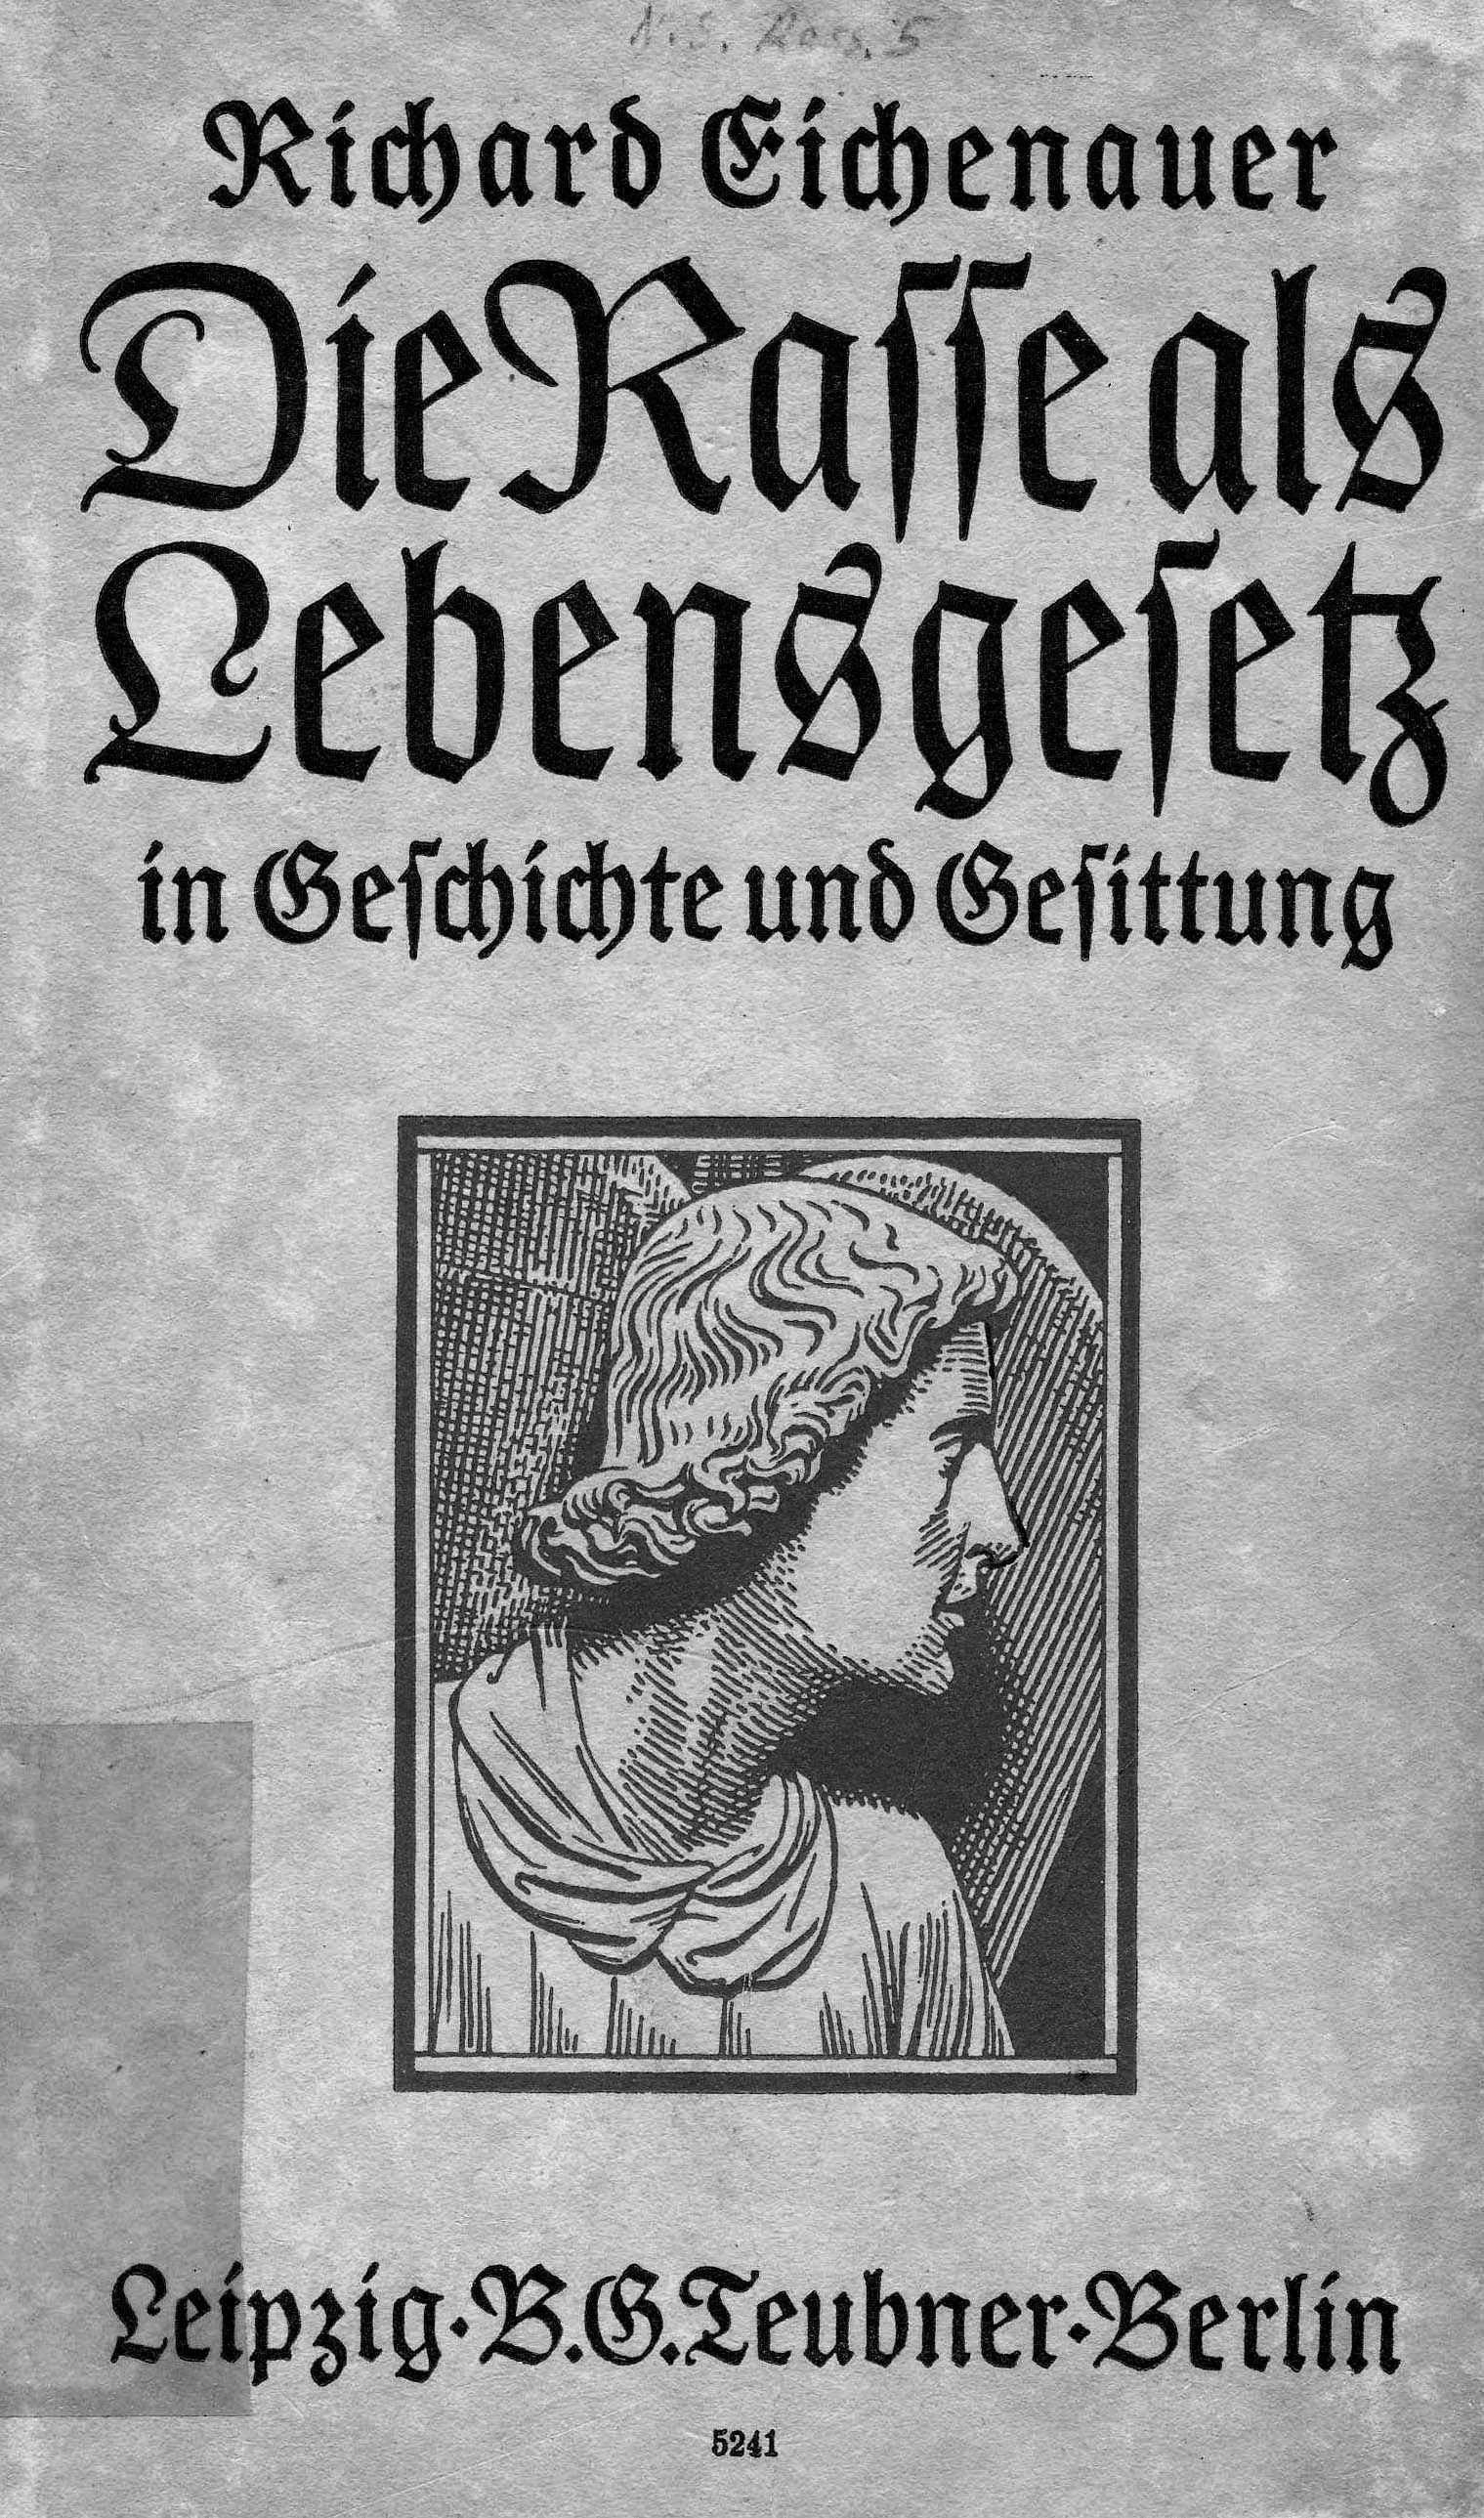 Deckblatt des Lehrbuchs von Eichenauer